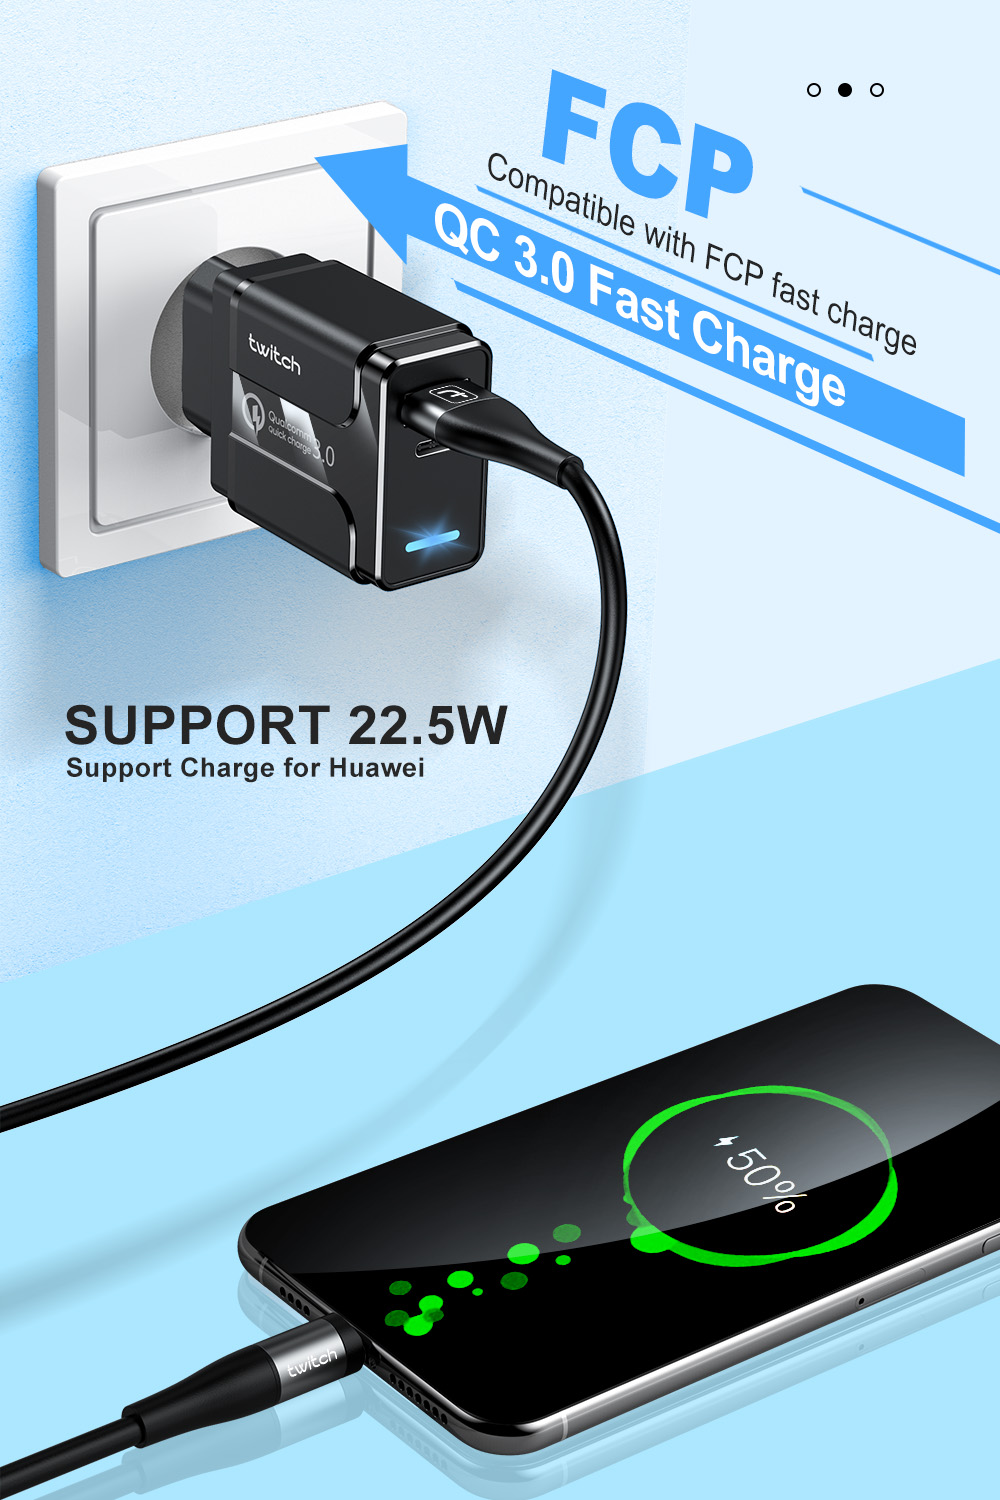 Củ sạc nhanh Twitch Q.C 3.0 cổng USB Type C PD với phích cắm Eu/Us tùy chọn cho Samsung Iphone Huawei Tablet